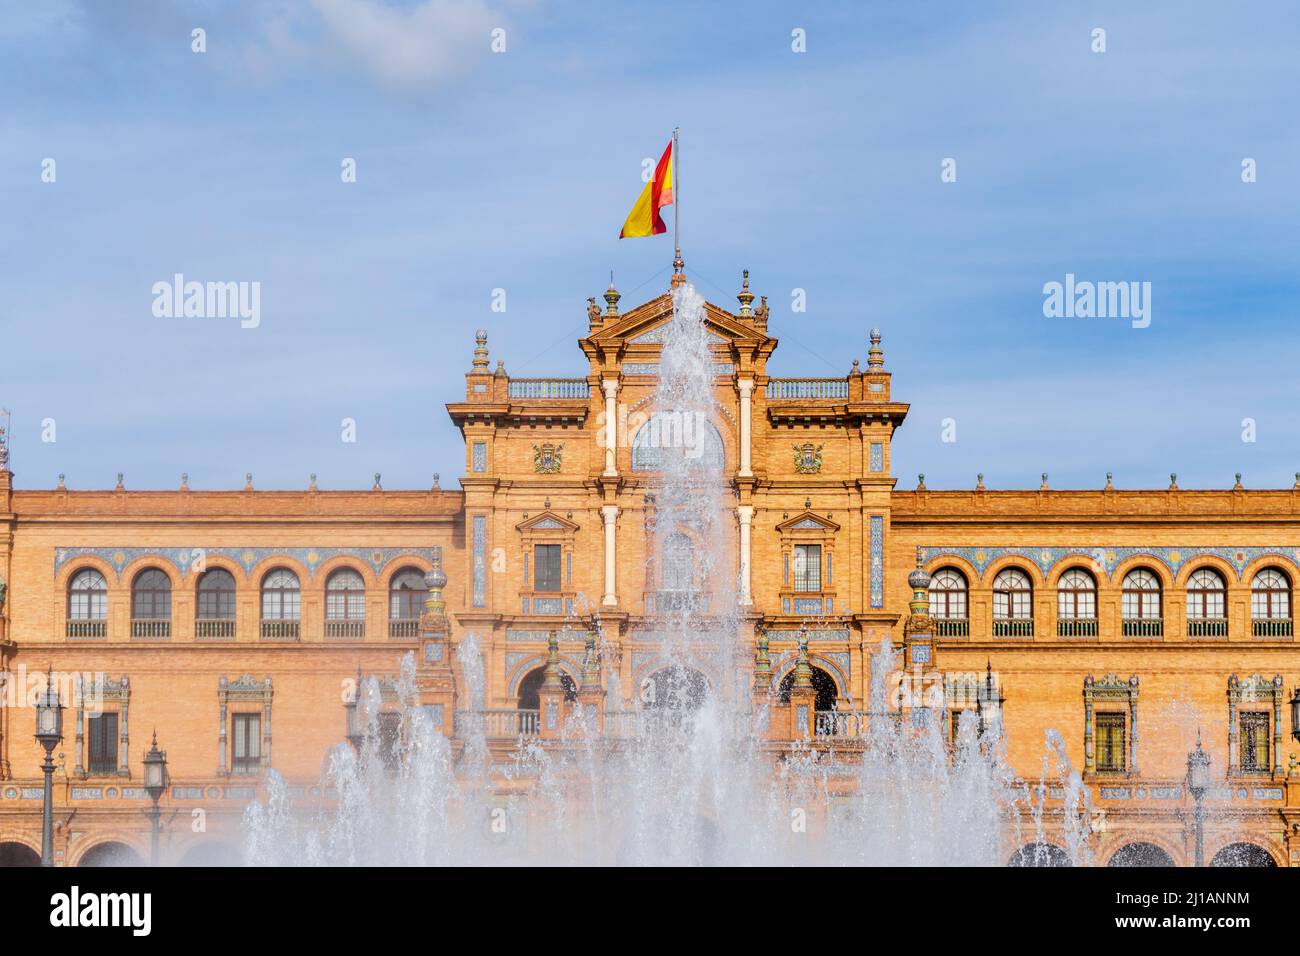 Das berühmteste Wahrzeichen an der Plaza de Espana mit dem Brunnen im Vordergrund, Sevilla, Spanien Stockfoto